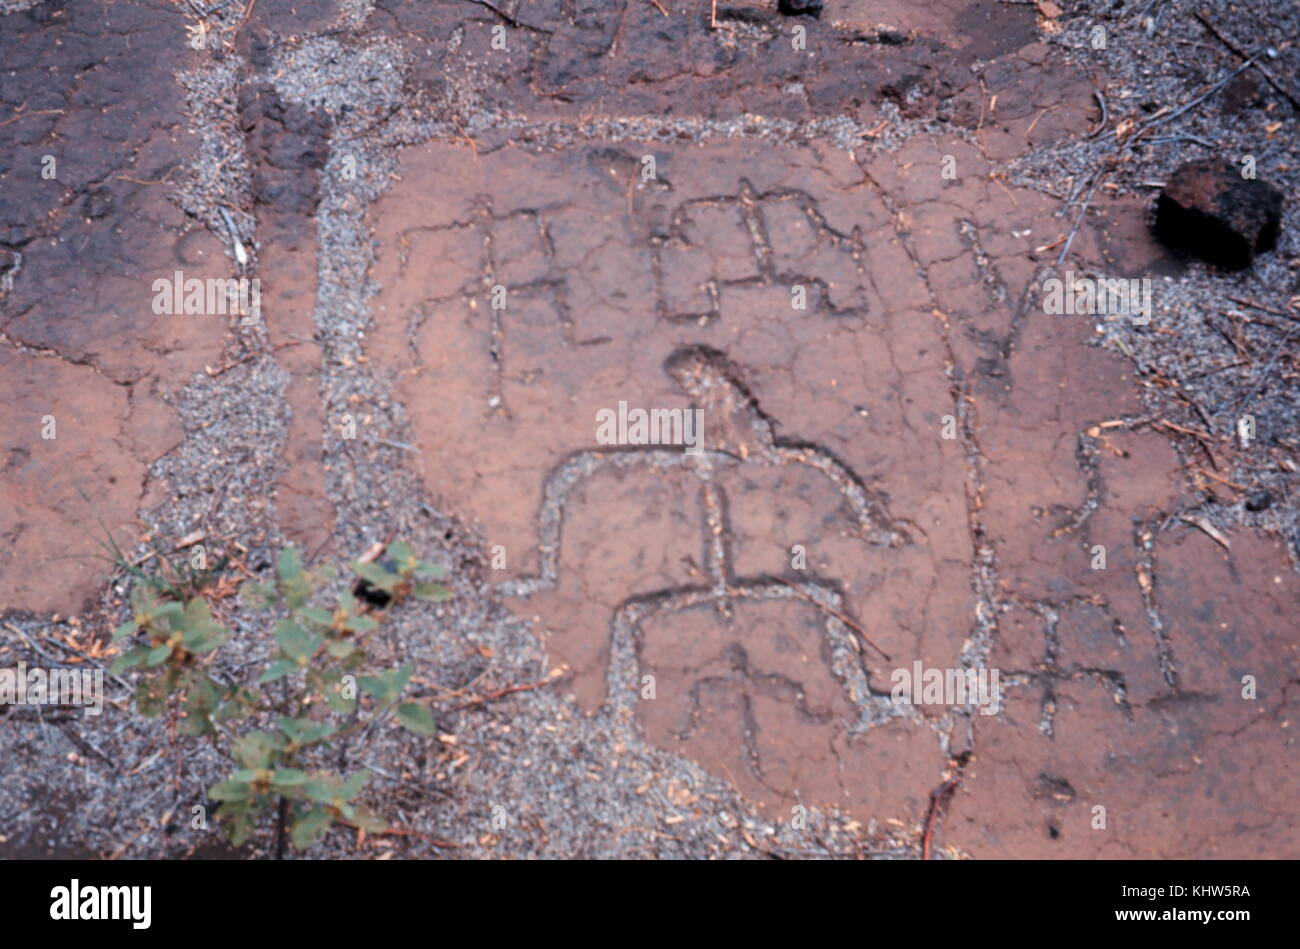 Fotografía de petroglifos en Hawai. Petroglifos son imágenes creadas por la extracción de una parte de una superficie rocosa por incisiones, picking, tallado, lijado, o como una forma de arte rupestre. fechada el siglo XX Foto de stock